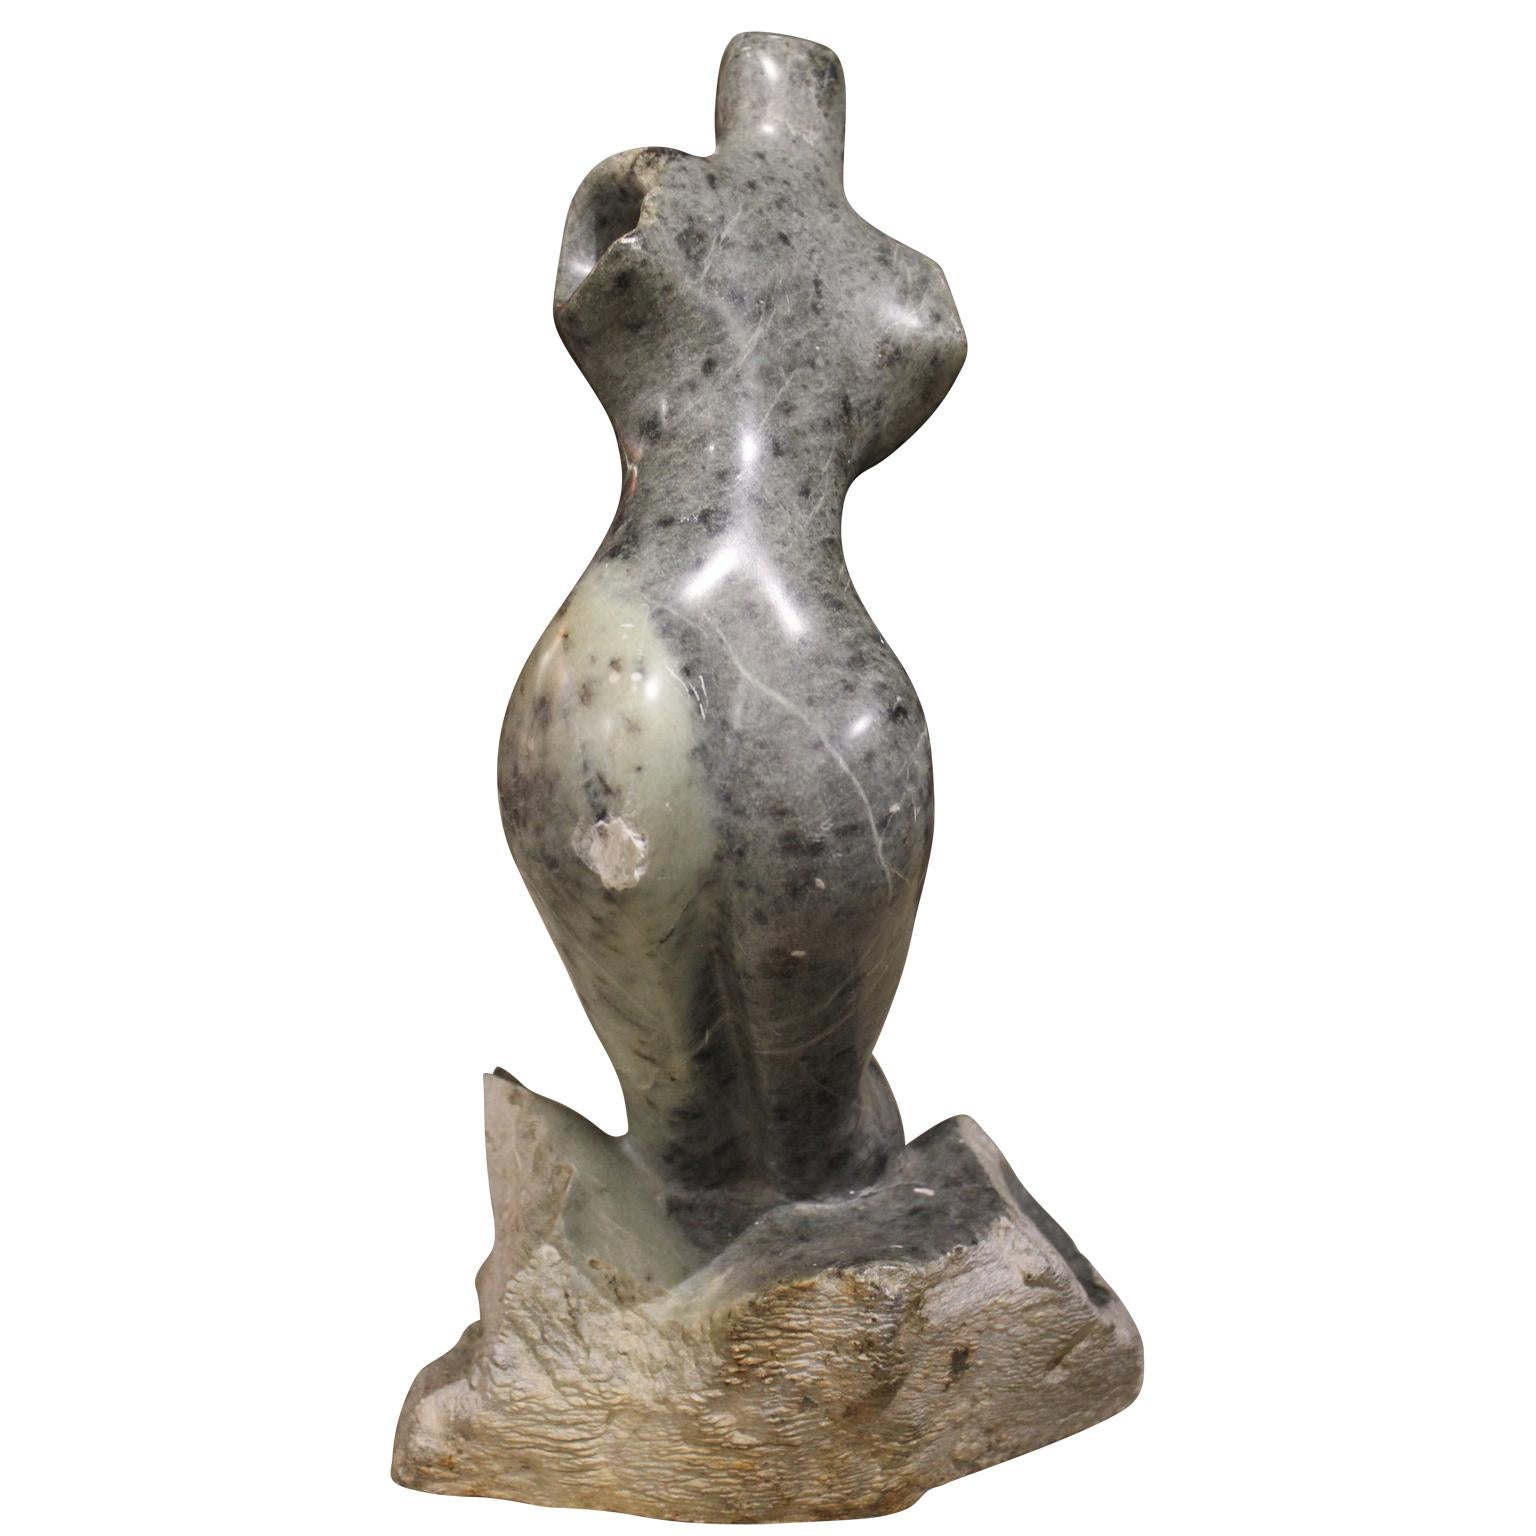 Figurative graue Steinskulptur einer weiblichen Figur (Abstrakter Impressionismus), Sculpture, von Jose Zacarias